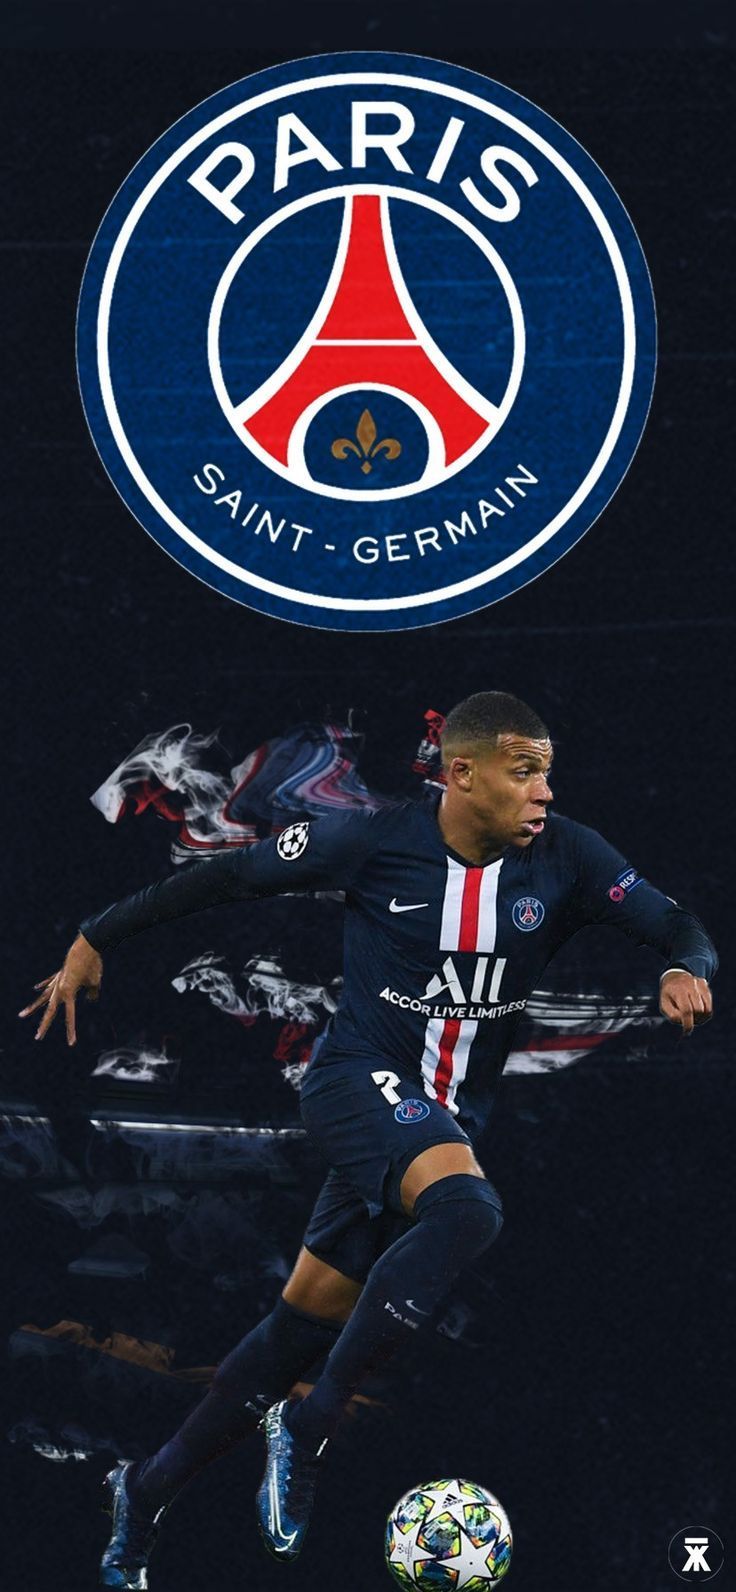  Mbappé Hintergrundbild 736x1592. Kylian Mbappé Wallpaper. Footballer, Forward, French